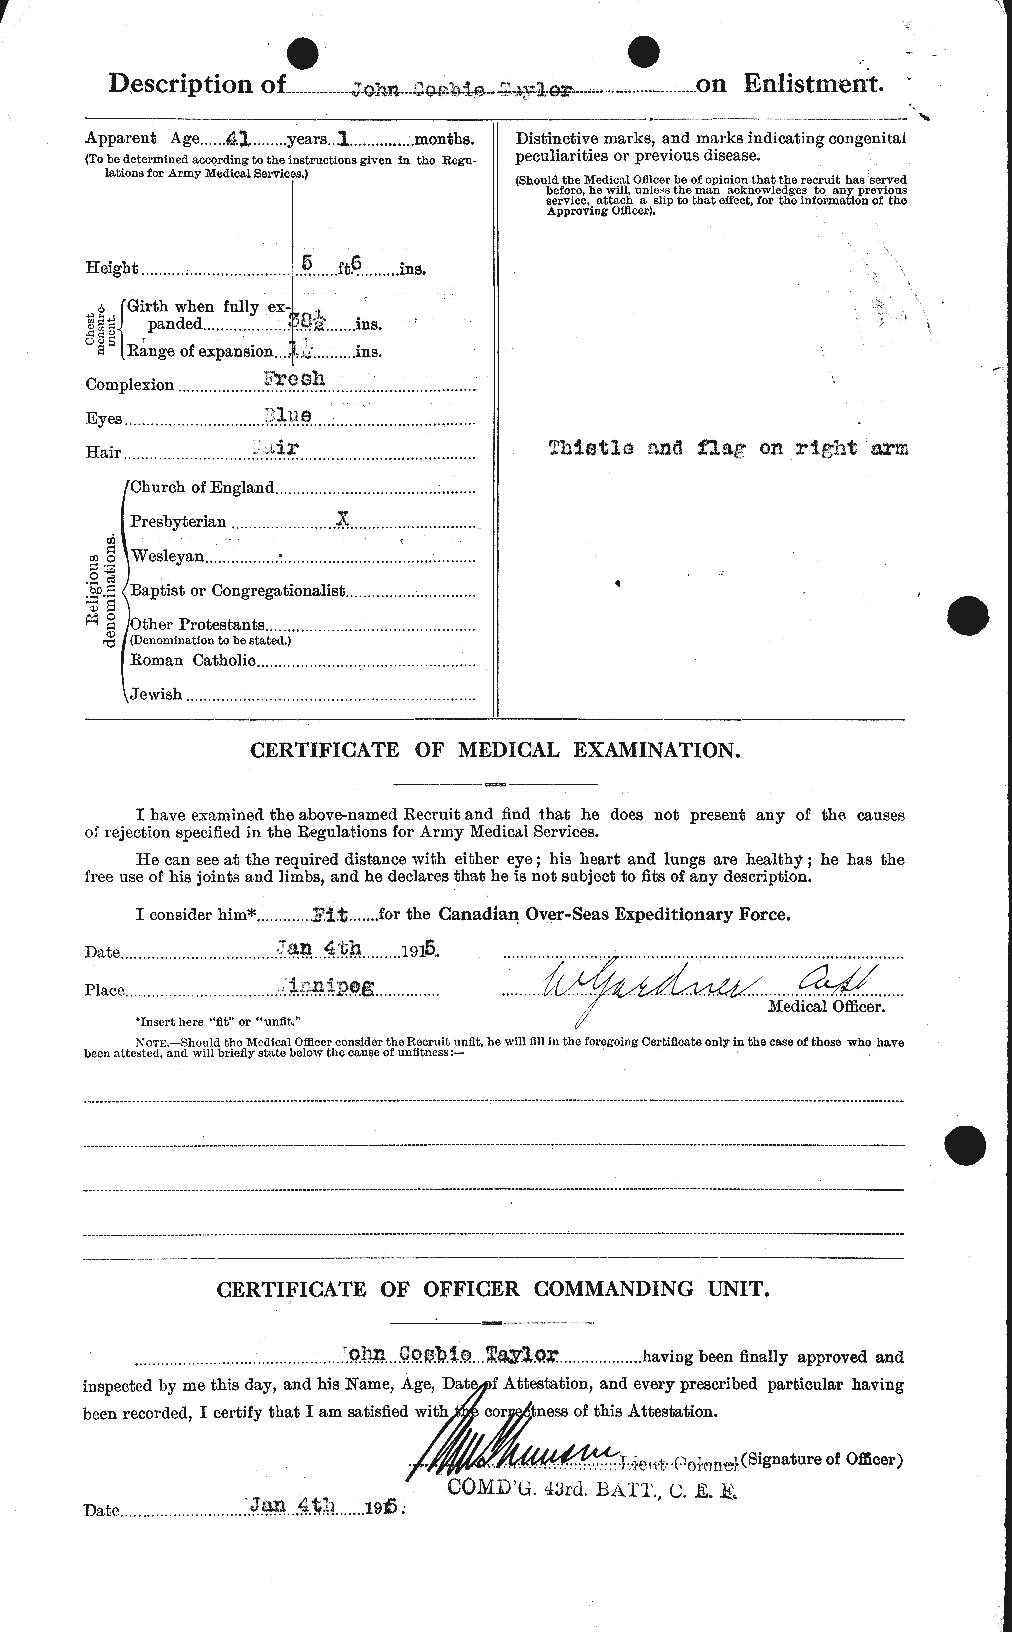 Dossiers du Personnel de la Première Guerre mondiale - CEC 627059b